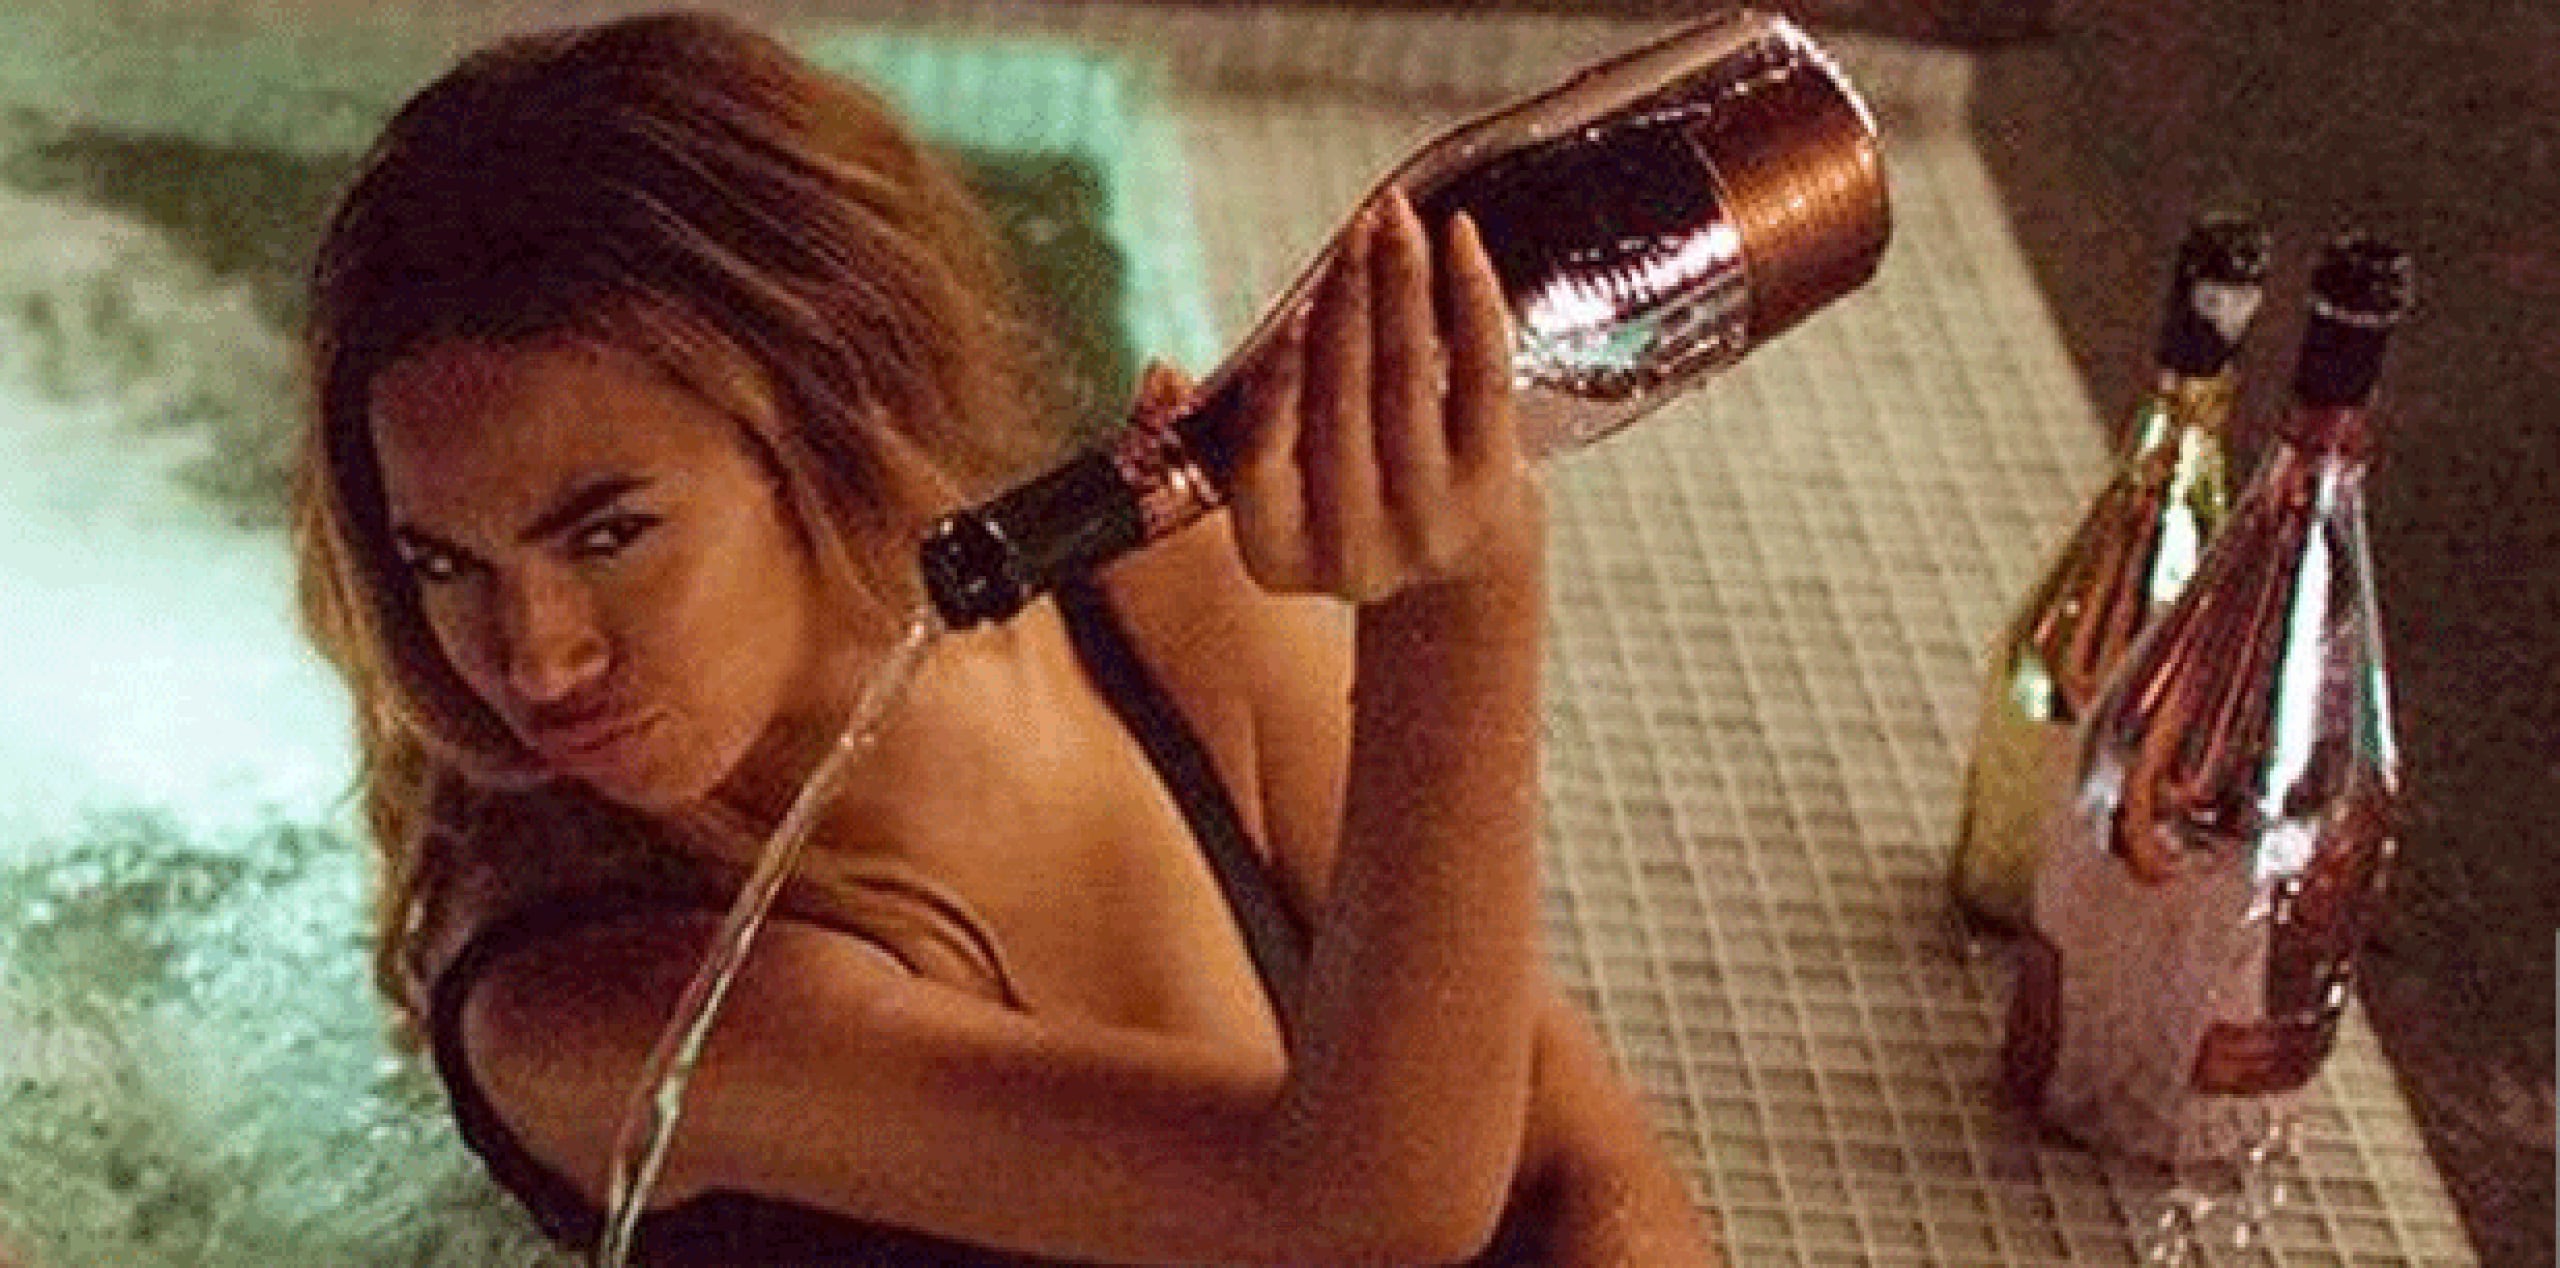 Esta es la foto de la supuesta escena del vídeo que ha circulado en las redes sociales en la que Beyoncé derrama una botella de costoso licor. (Twitter)